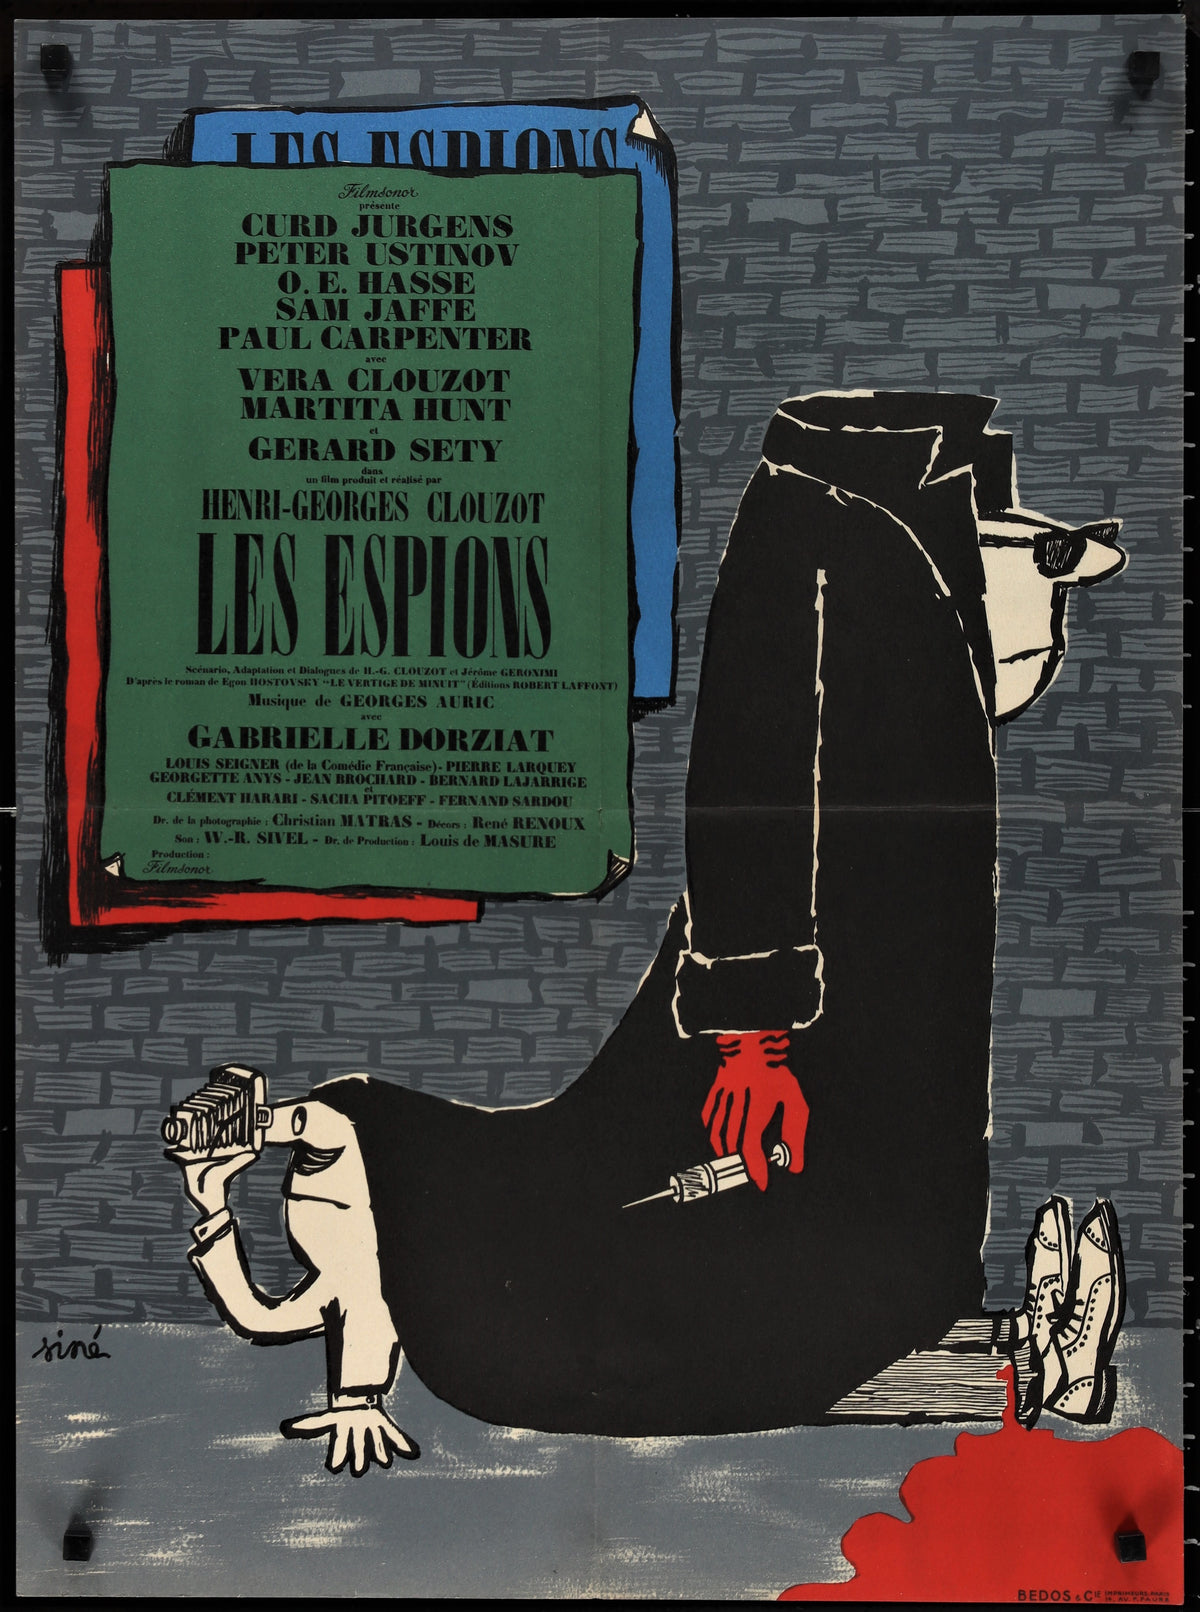 Les Espions - Authentic Vintage Poster